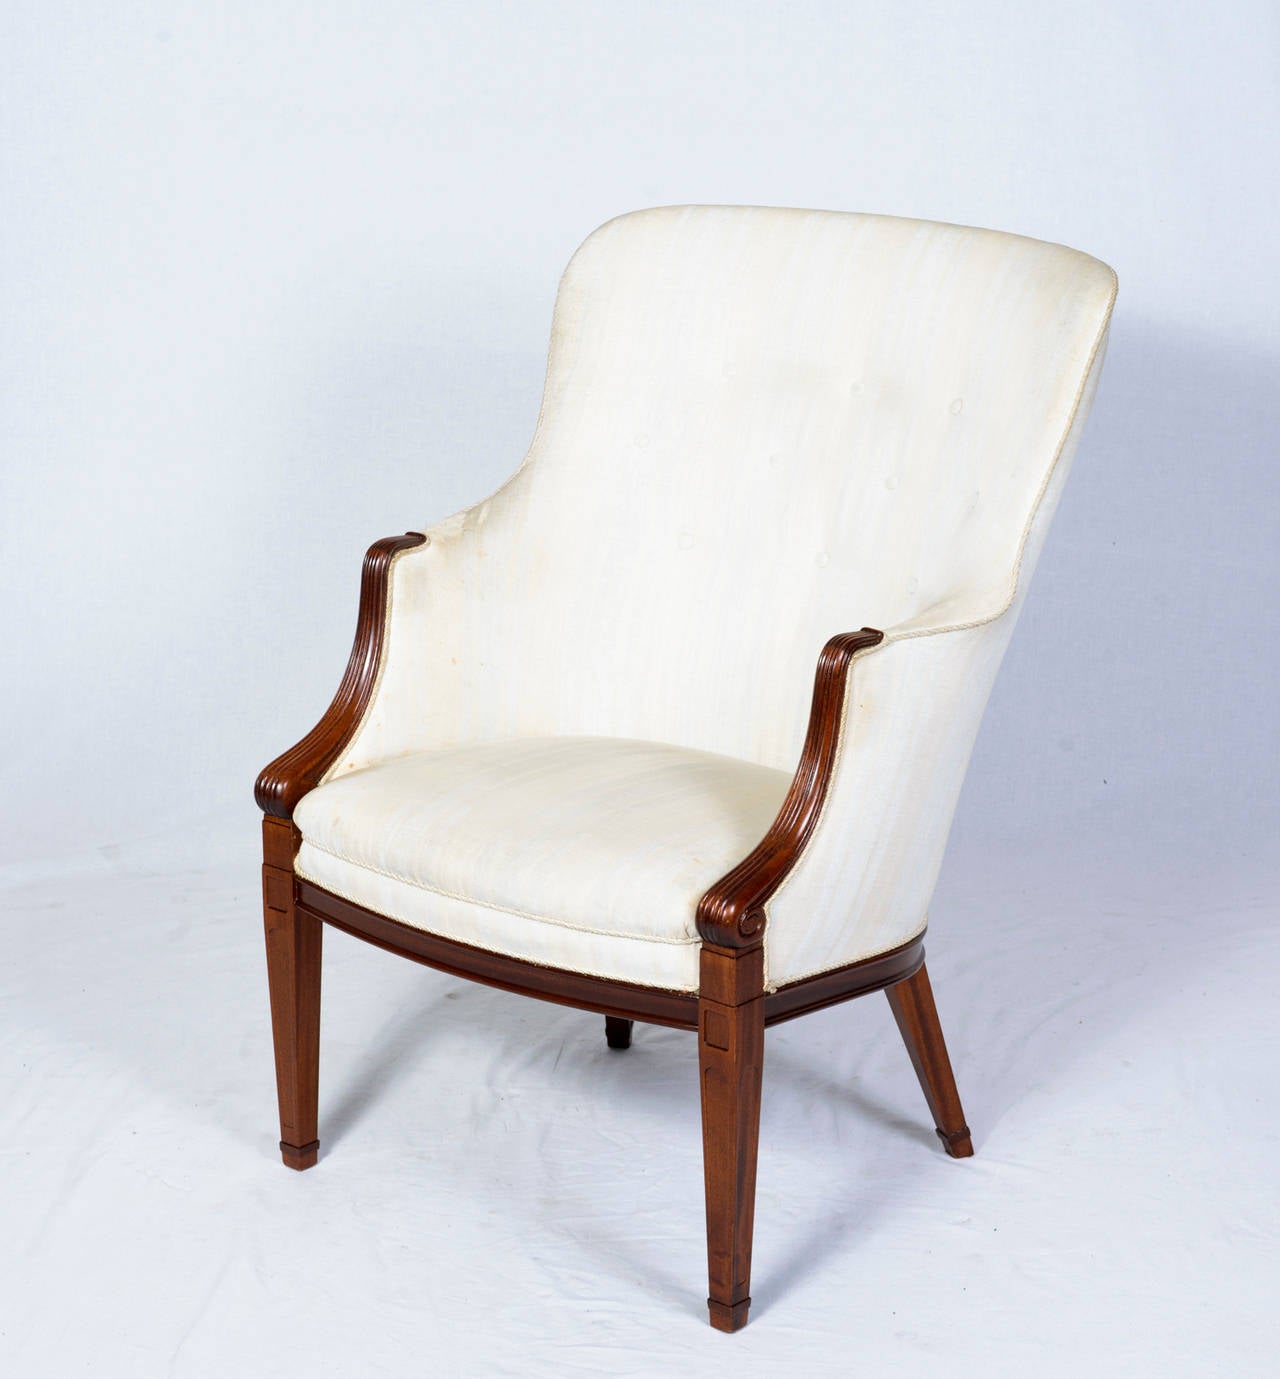 Scandinavian Modern Frits Henningsen Lounge Chair